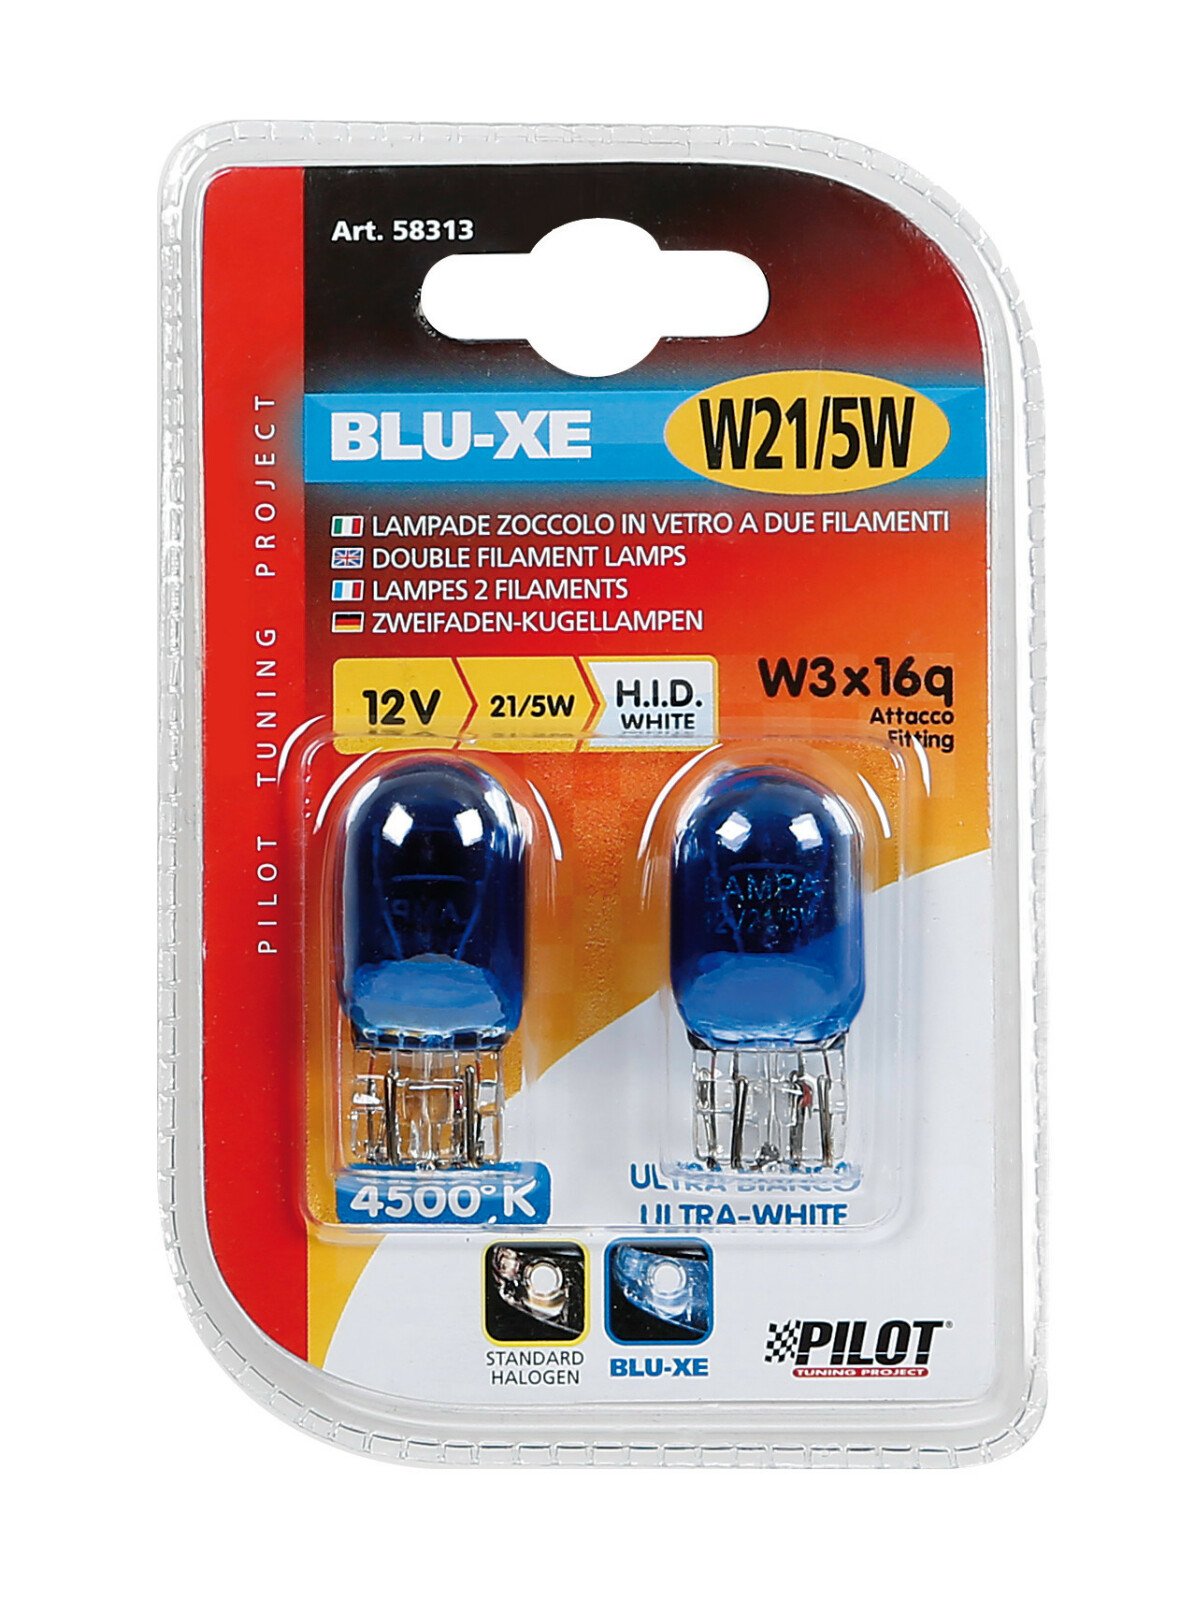 12V Blu-Xe Wedge base lamp 2 filaments - W21/5W - 21/5W - W3x16q - 2 pcs - D/Blister thumb